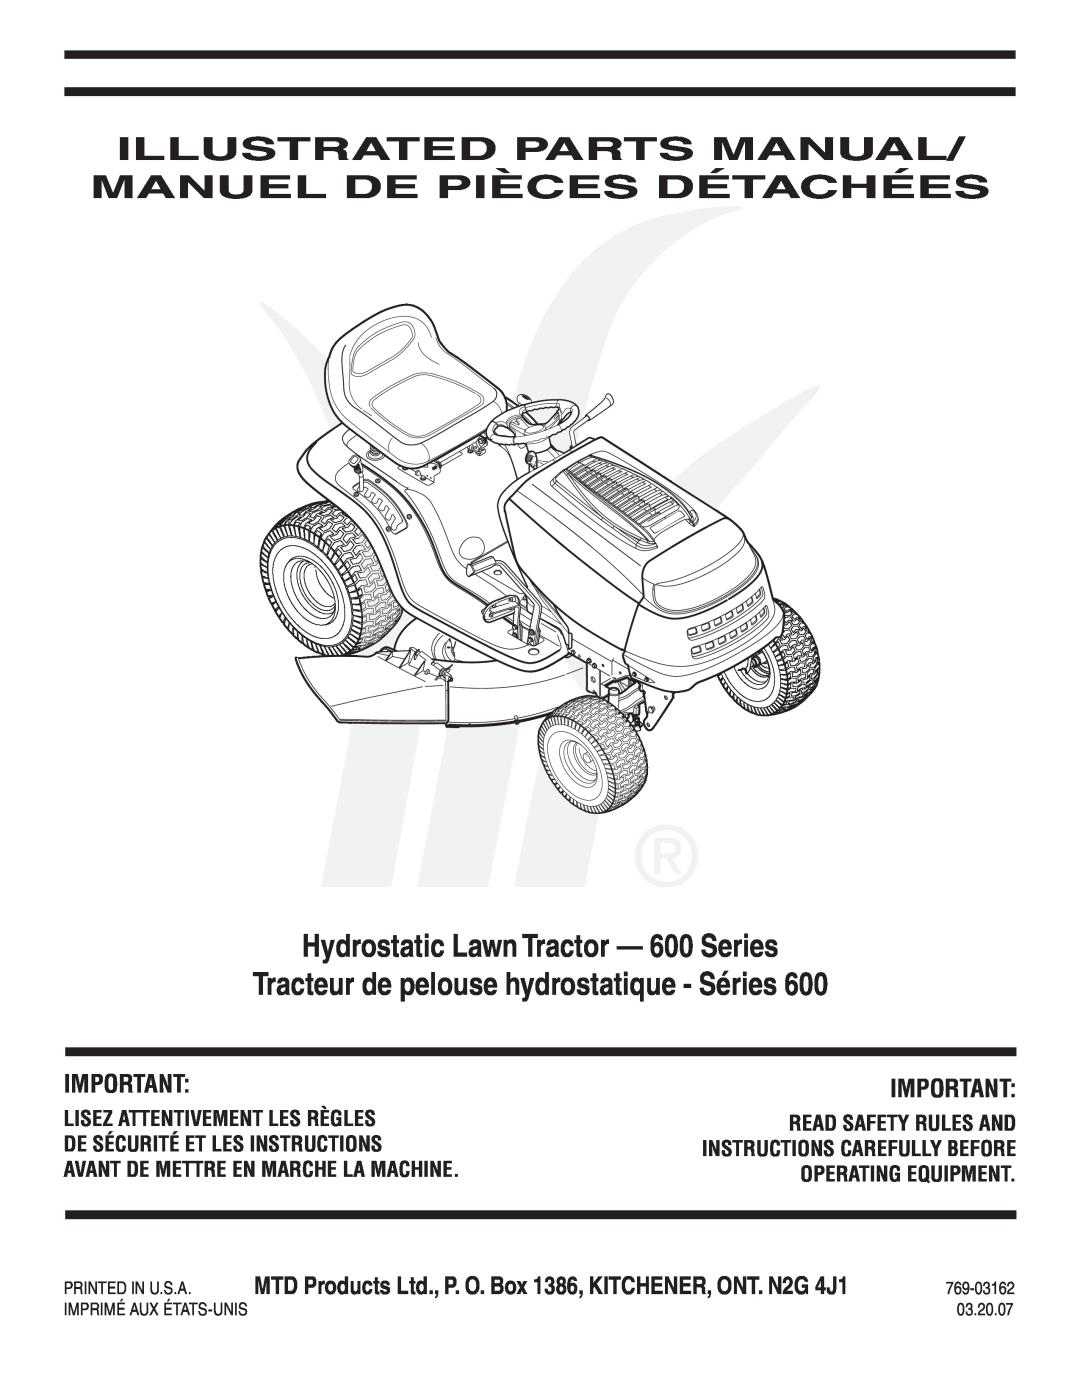 MTD manual Illustrated Parts Manual/ Manuel De Pièces Détachées, Hydrostatic Lawn Tractor - 600 Series, 769-03162 